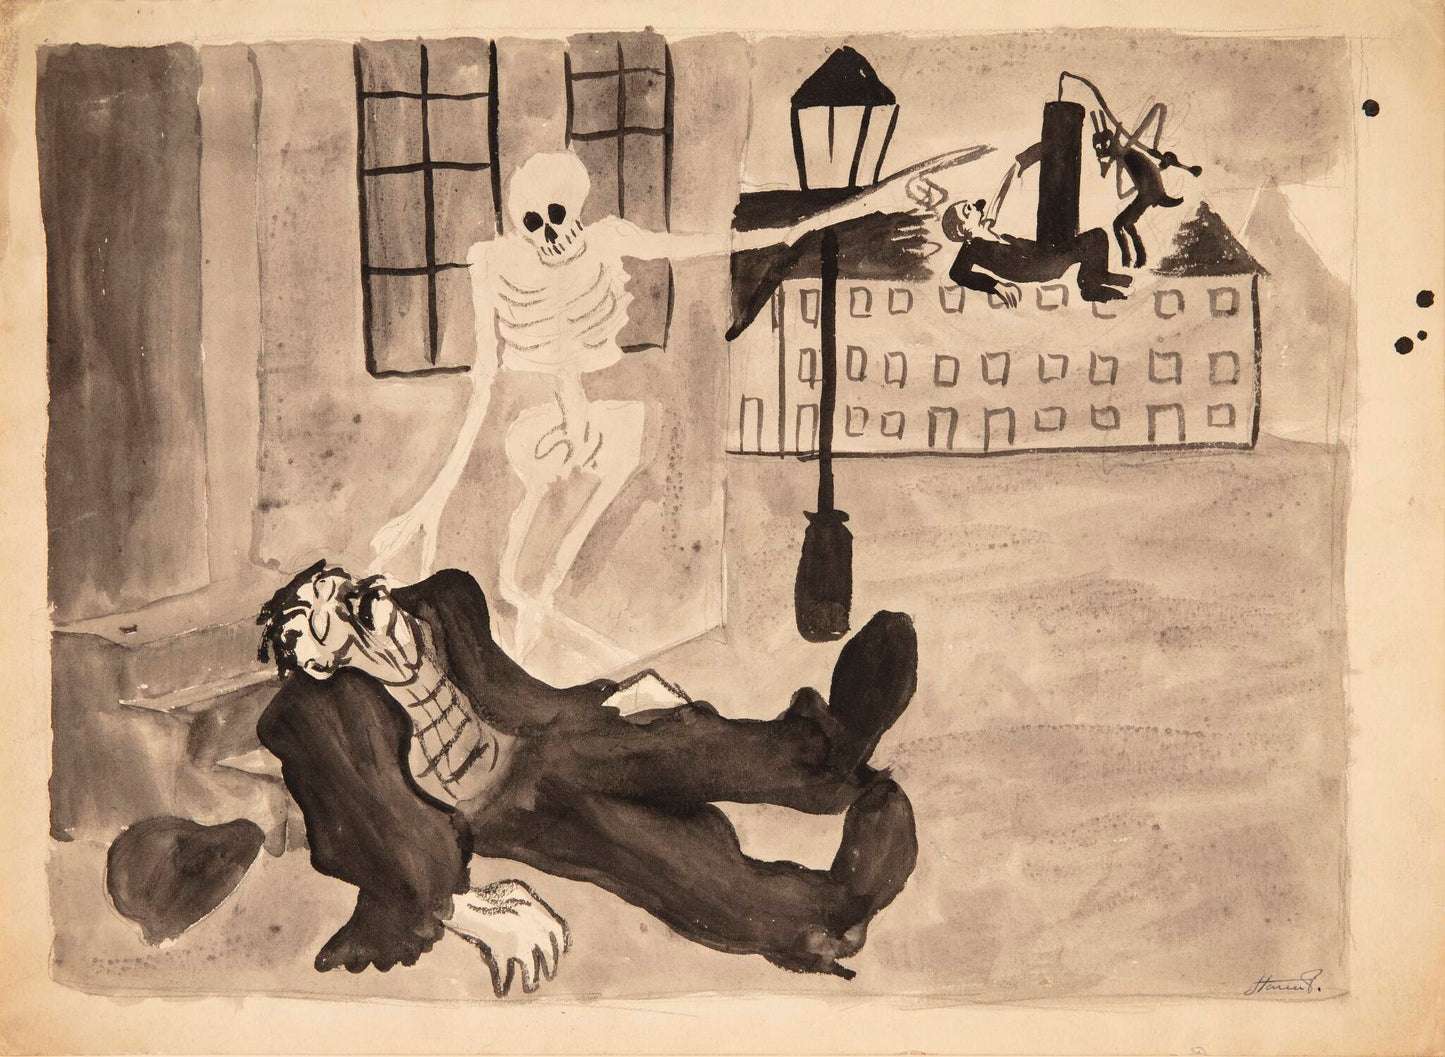 Døden og drankeren (La muerte y el borracho) de Robert Storm Petersen - c. 1907 